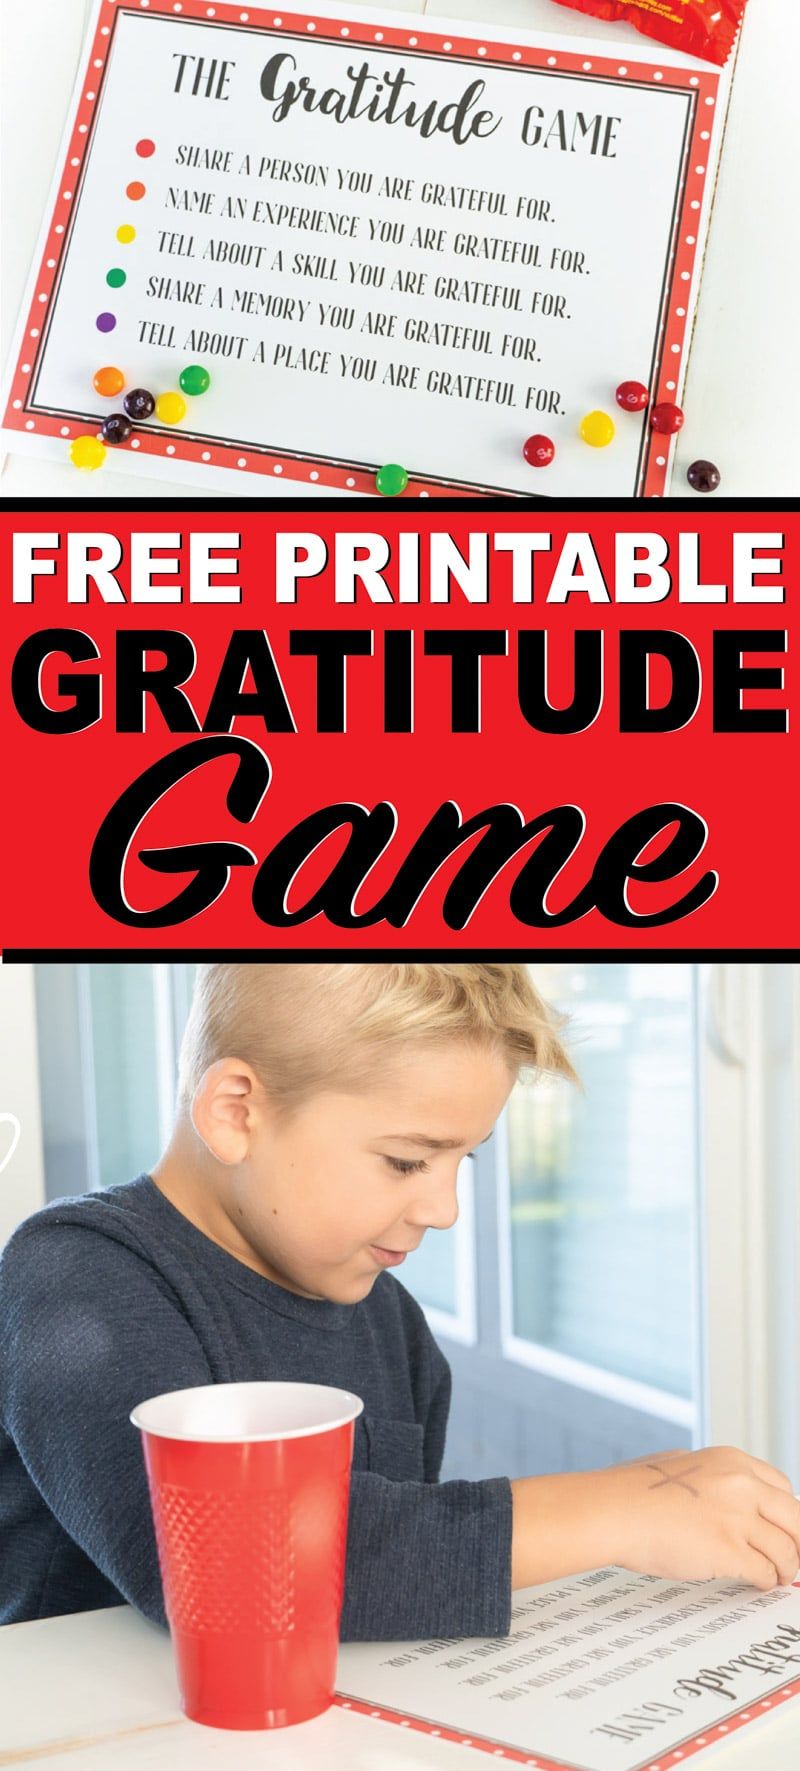 Ένα δωρεάν εκτυπώσιμο παιχνίδι ευγνωμοσύνης για παιδιά ή γύρω από το τραπέζι των Ευχαριστιών! Μία από τις πιο διασκεδαστικές δραστηριότητες των Ευχαριστιών για οικογένειες!